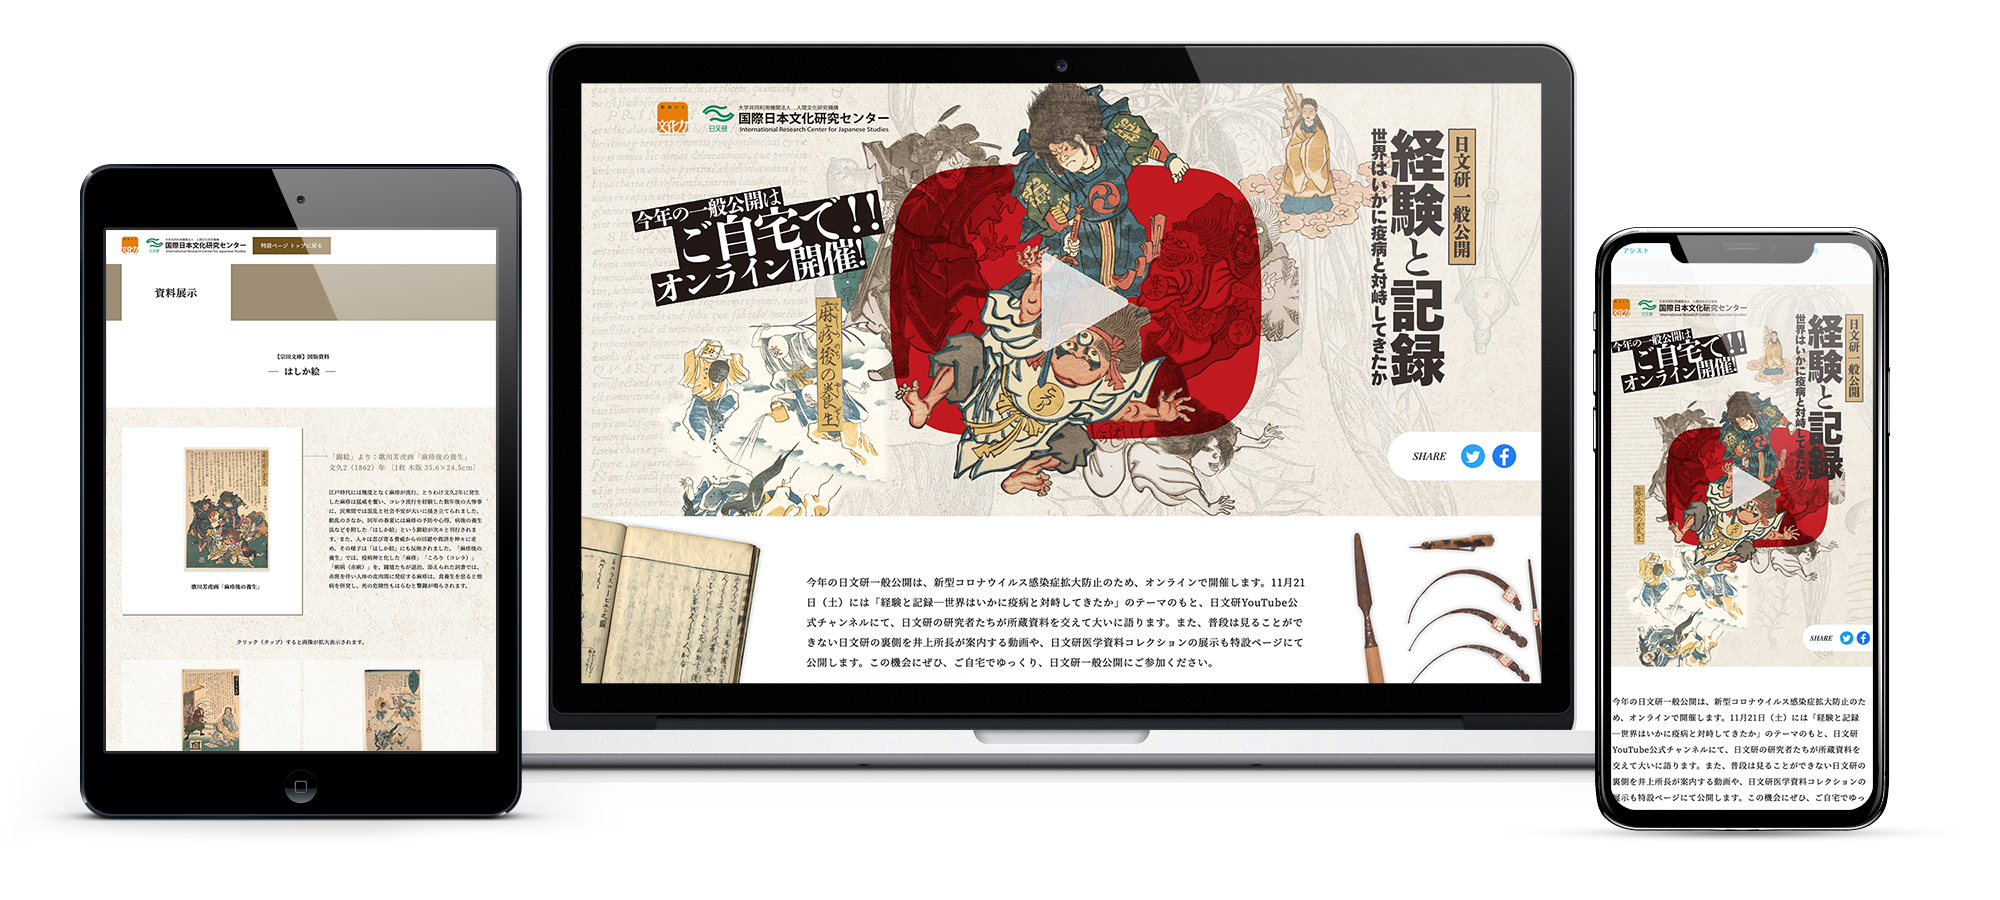 国際日本文化研究センターwebサイトのモックアップ